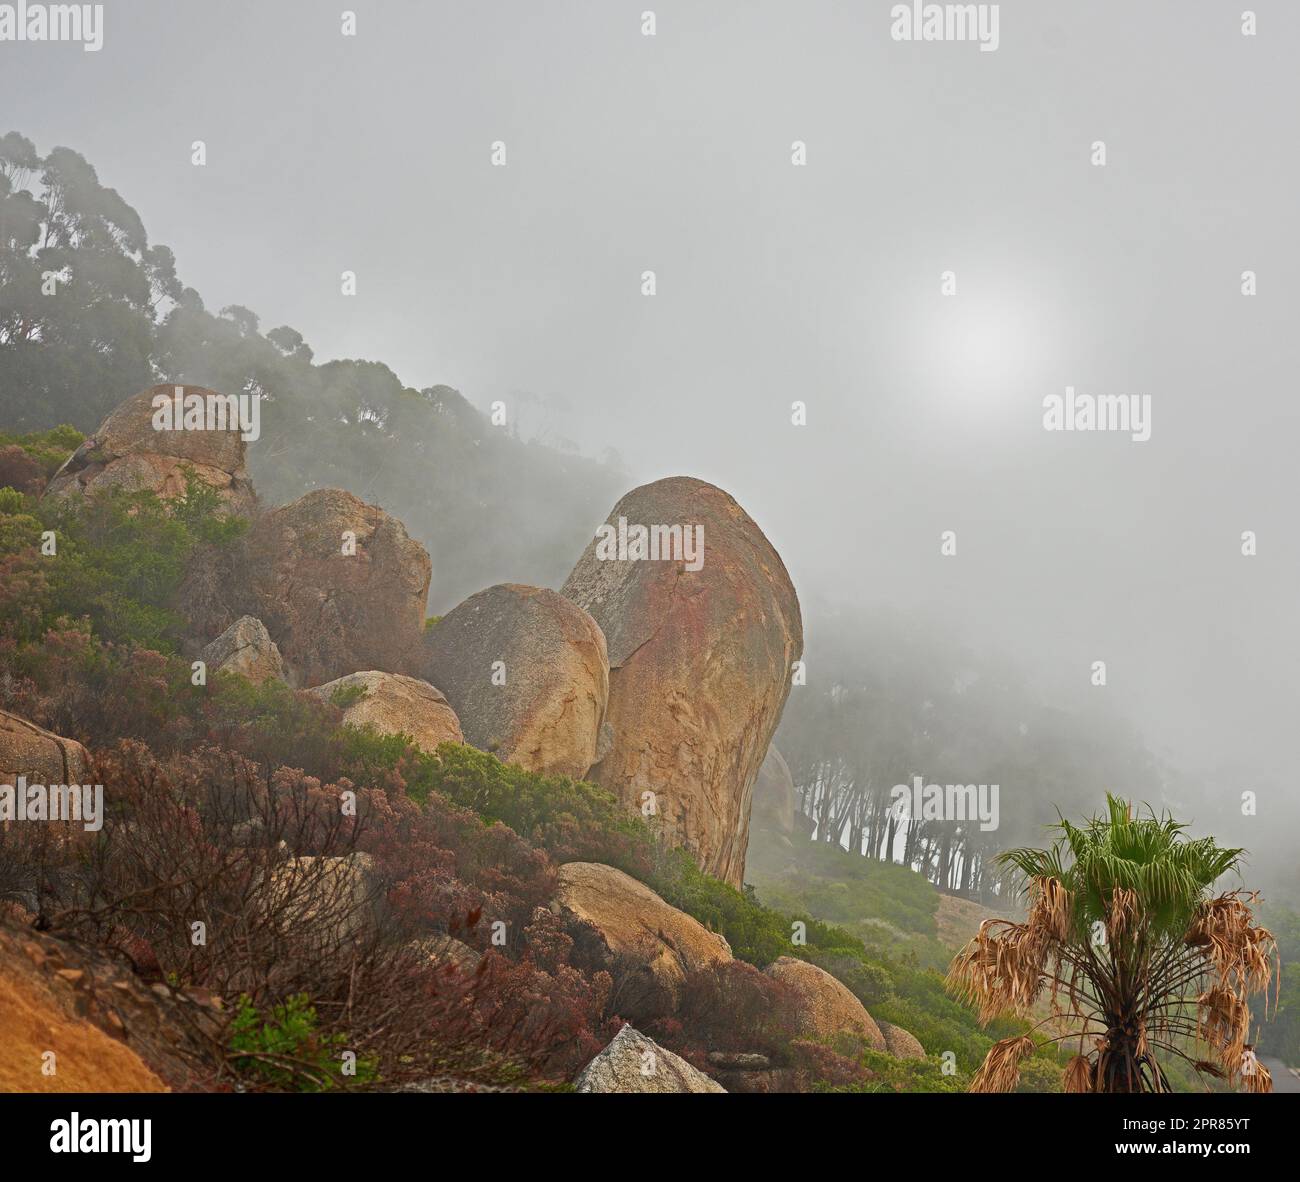 Ein nebeliger Morgen auf dem friedlichen Berggipfel, ruhige Zen-Natur mit malerischer Aussicht. Smog bedeckte felsige Landschaft des Lions Head Berges. Die Folgen eines verheerenden Waldbrands auf einem Berg. Stockfoto